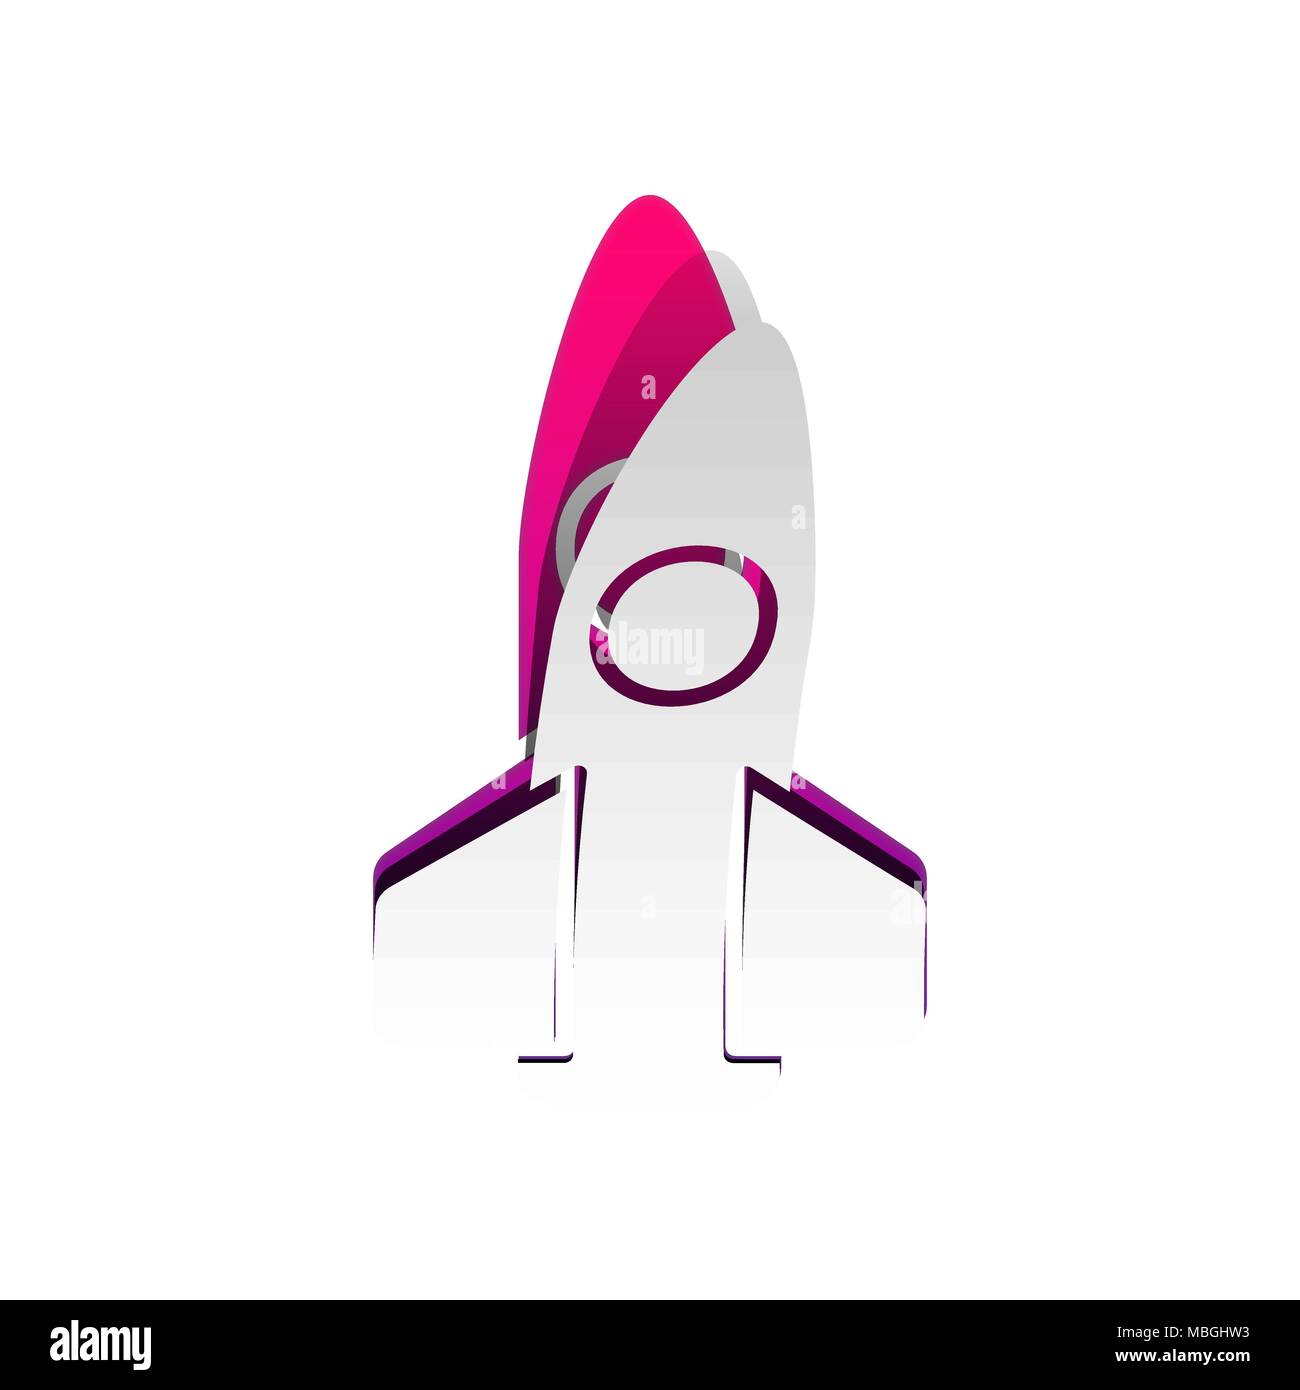 Retro Rocket zeichen Abbildung. Vektor. Abnehmbare Papier mit Schatten in zugrunde liegenden Layer mit magenta-violetten Hintergrund. Stock Vektor